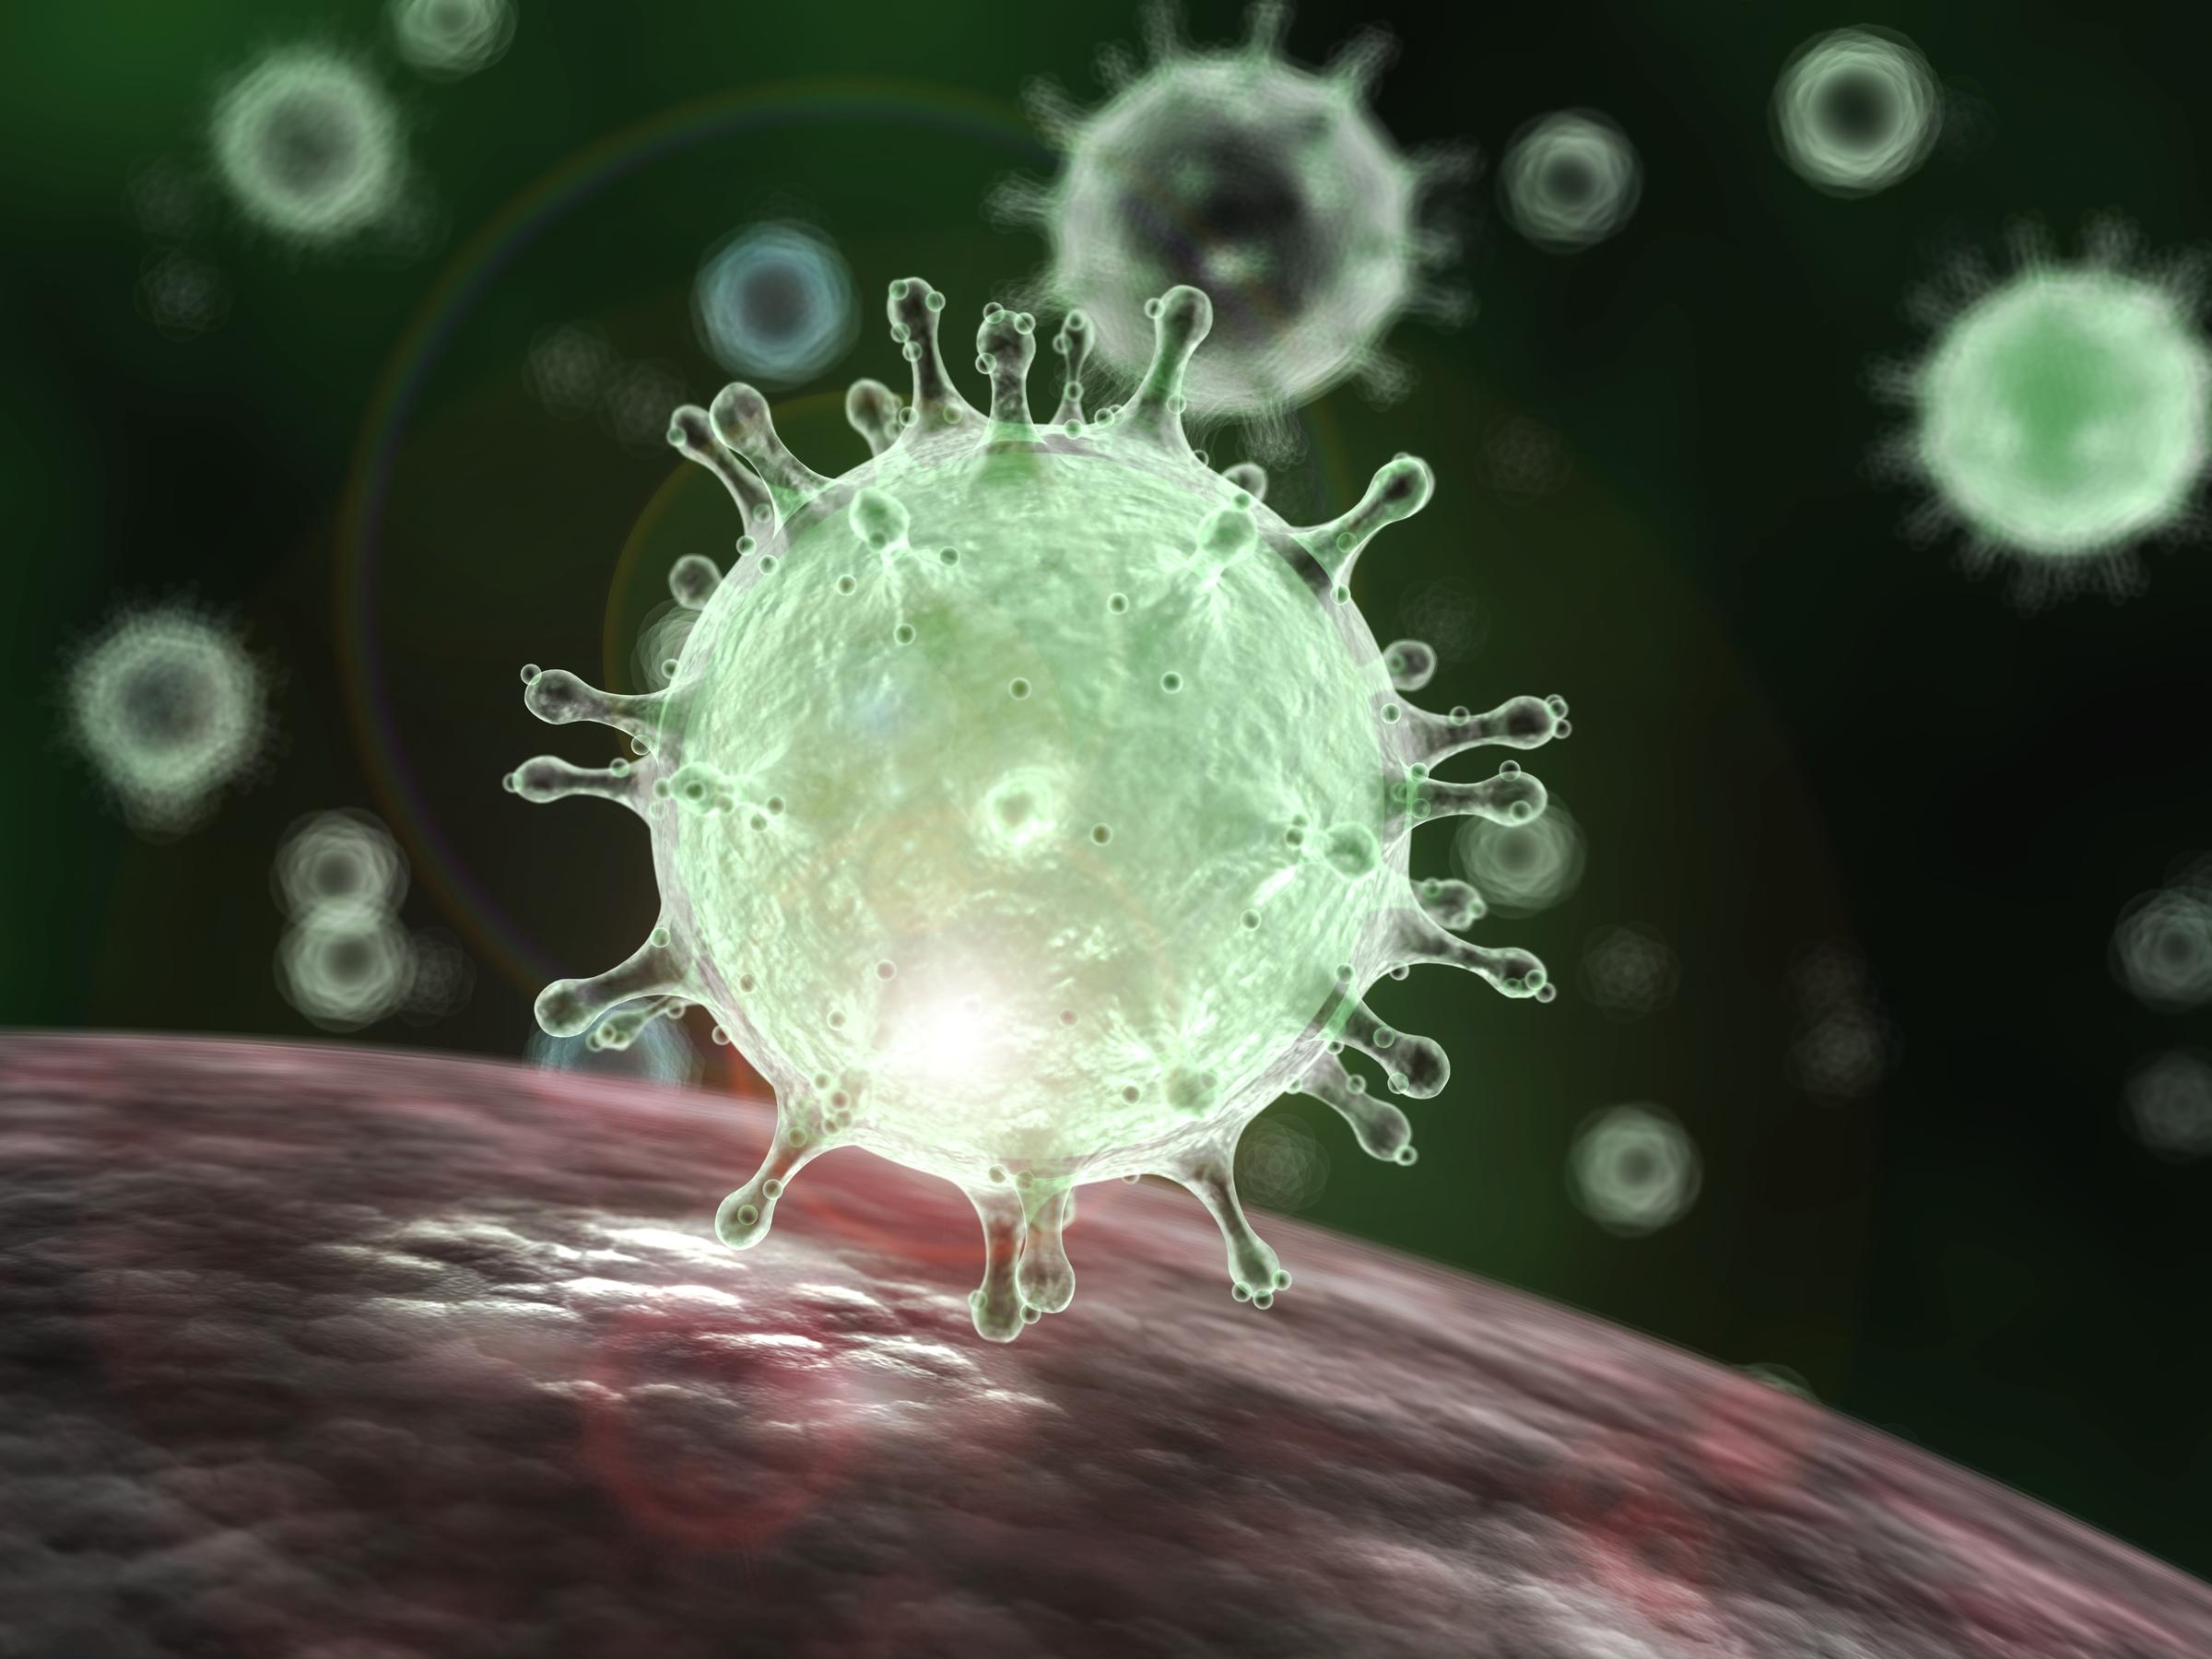 Nhìn dưới kính hiển vi, dòng coronavirus có các gai protein giống như vương miện